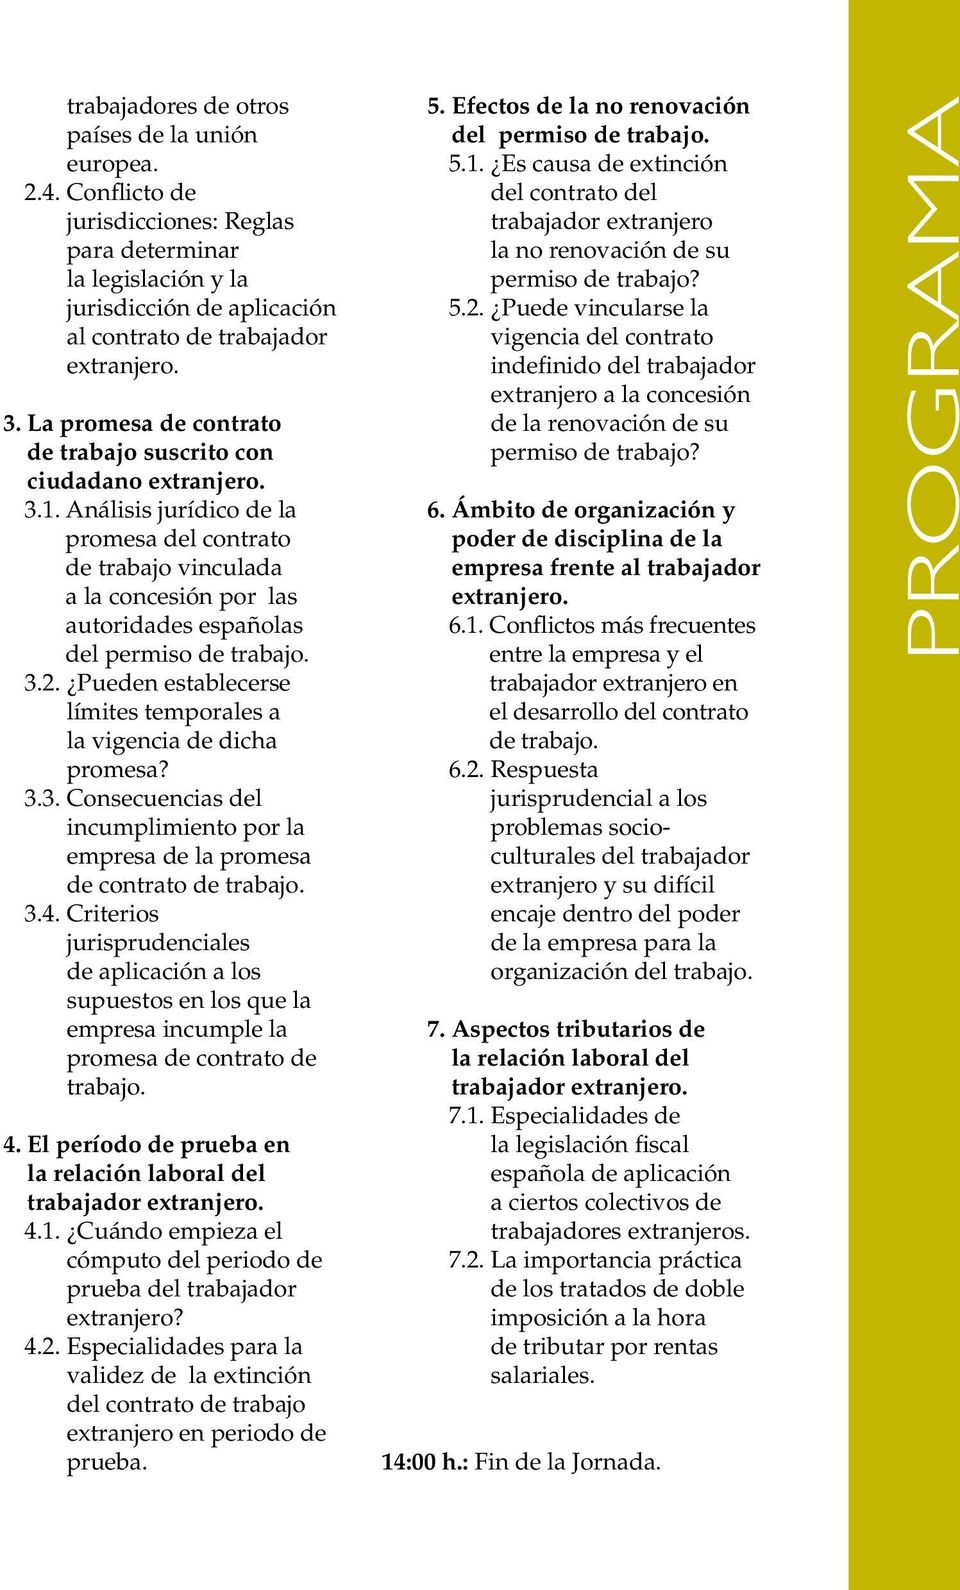 Análisis jurídico de la promesa del contrato de trabajo vinculada a la concesión por las autoridades españolas del permiso de trabajo. 3.2.